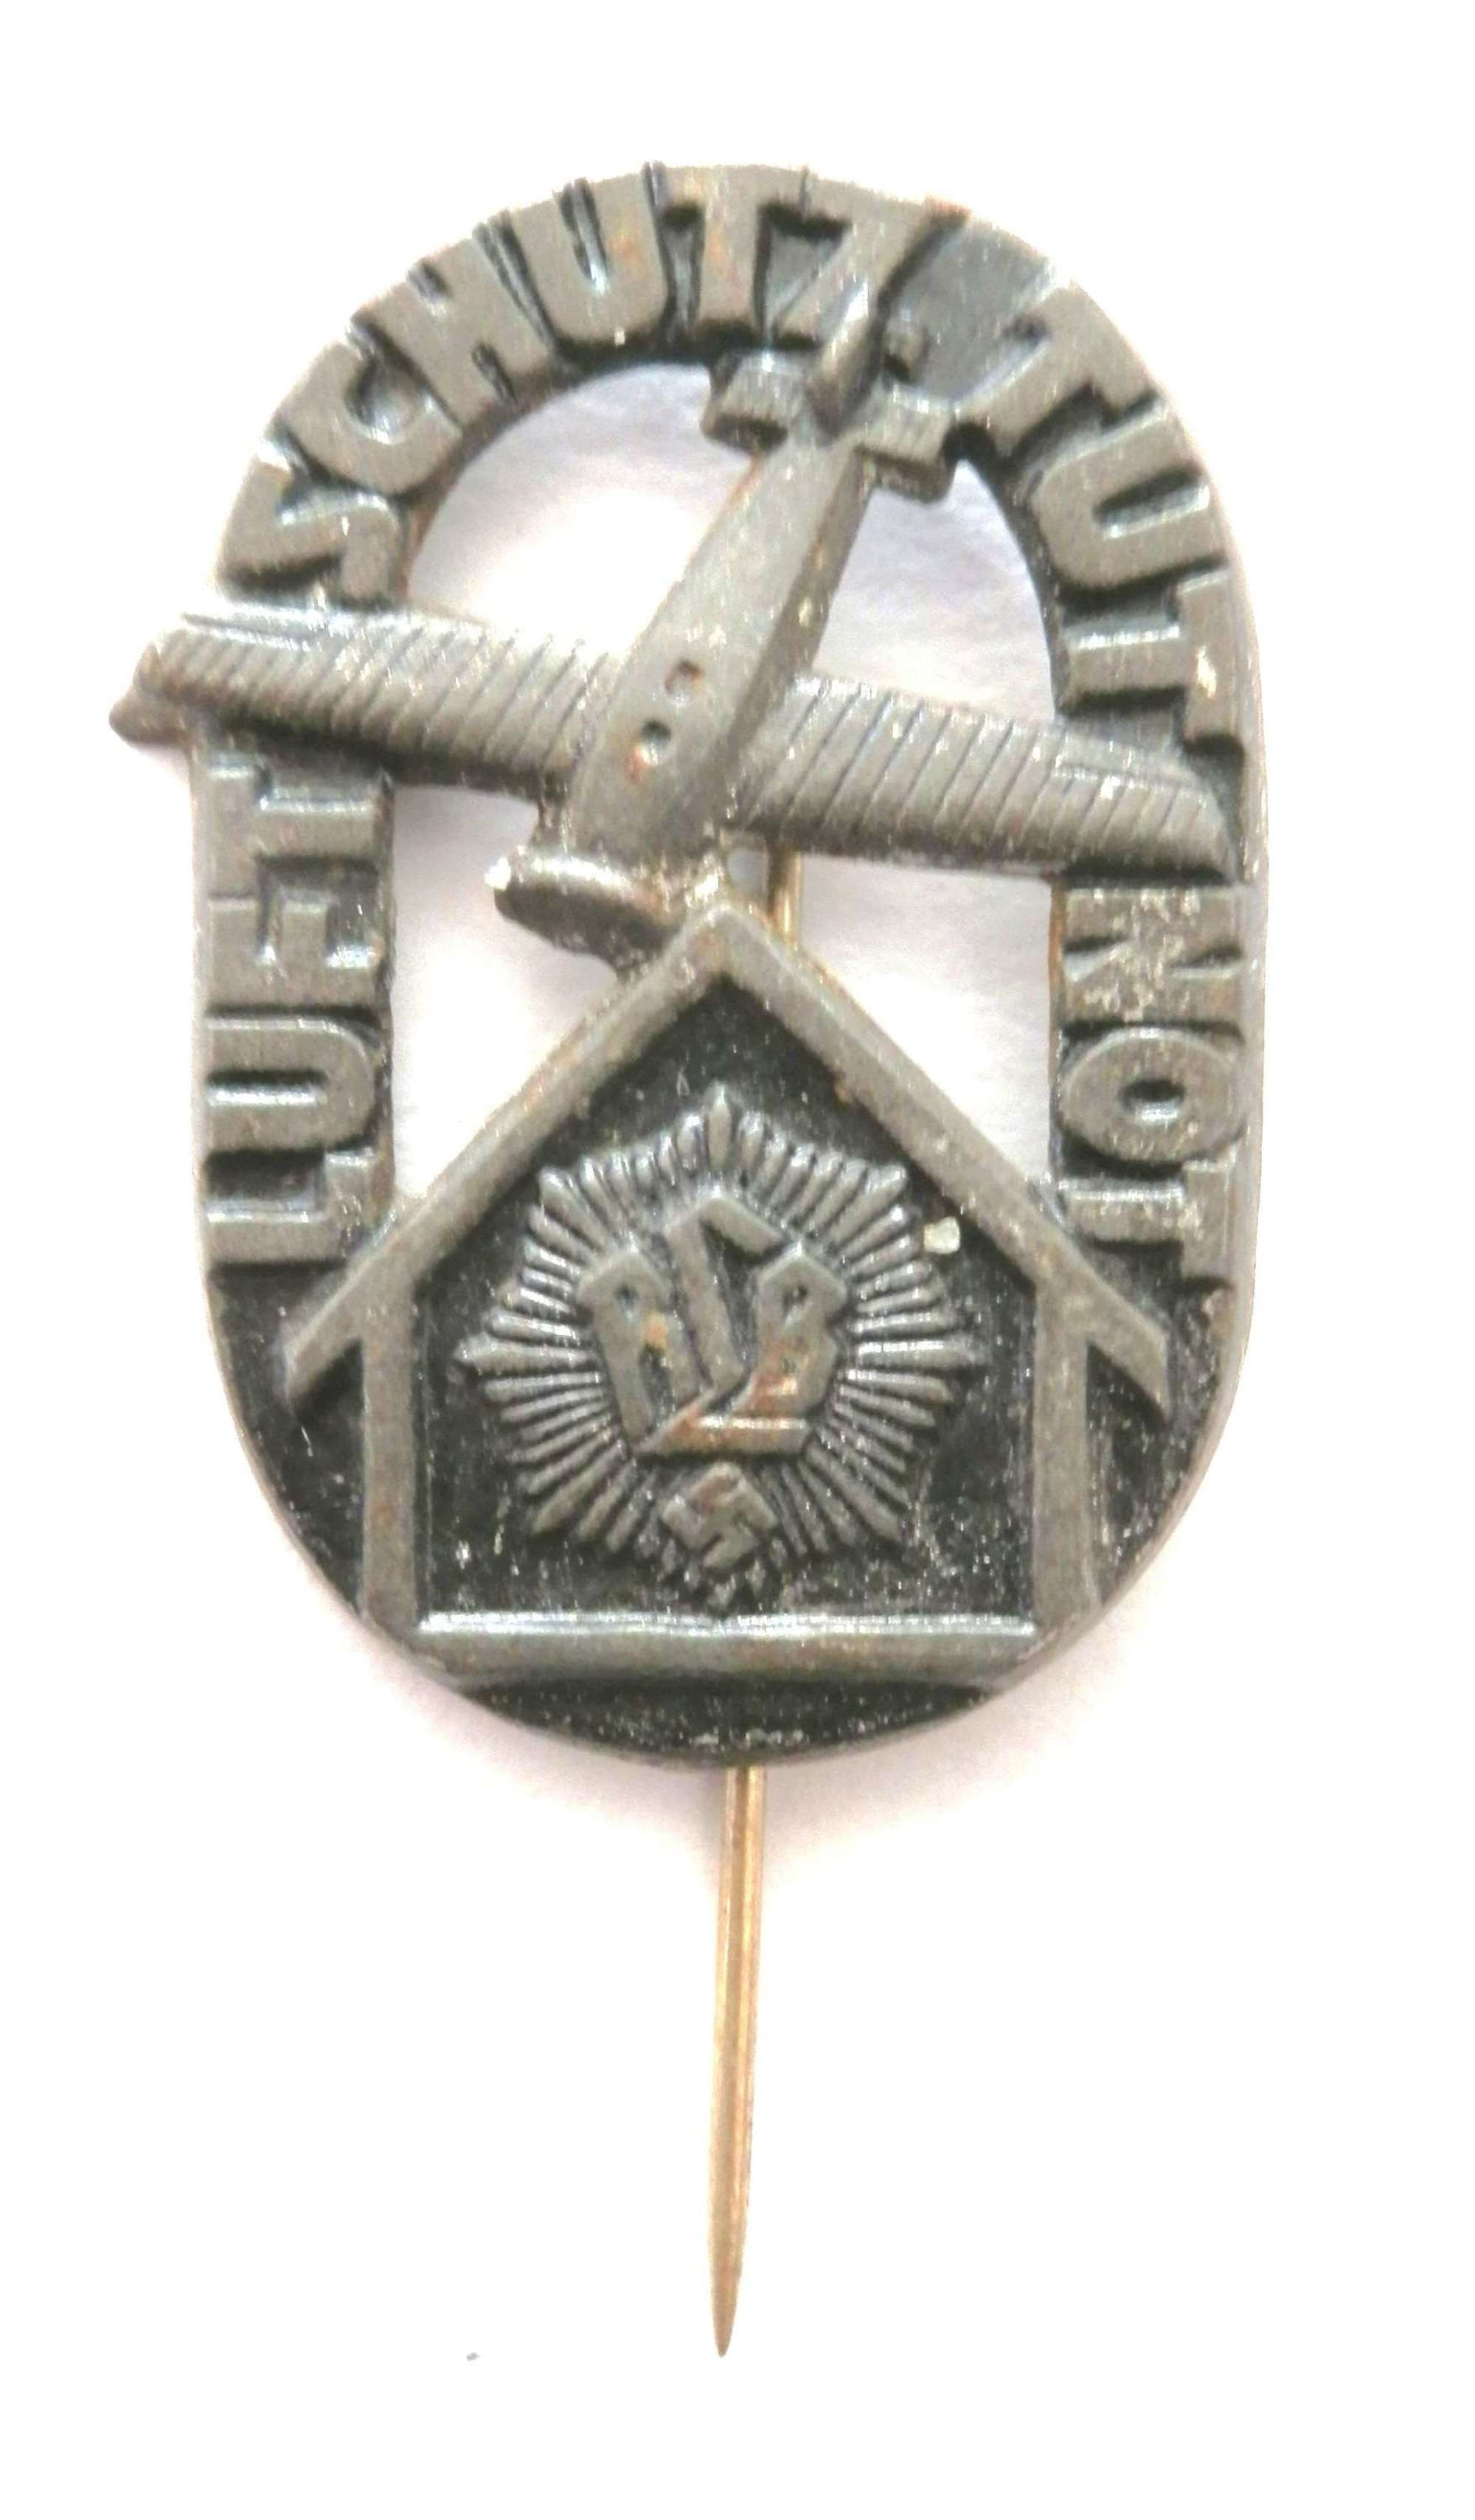 RLB ‘Reichs Luftschutz Bund’ Badge.